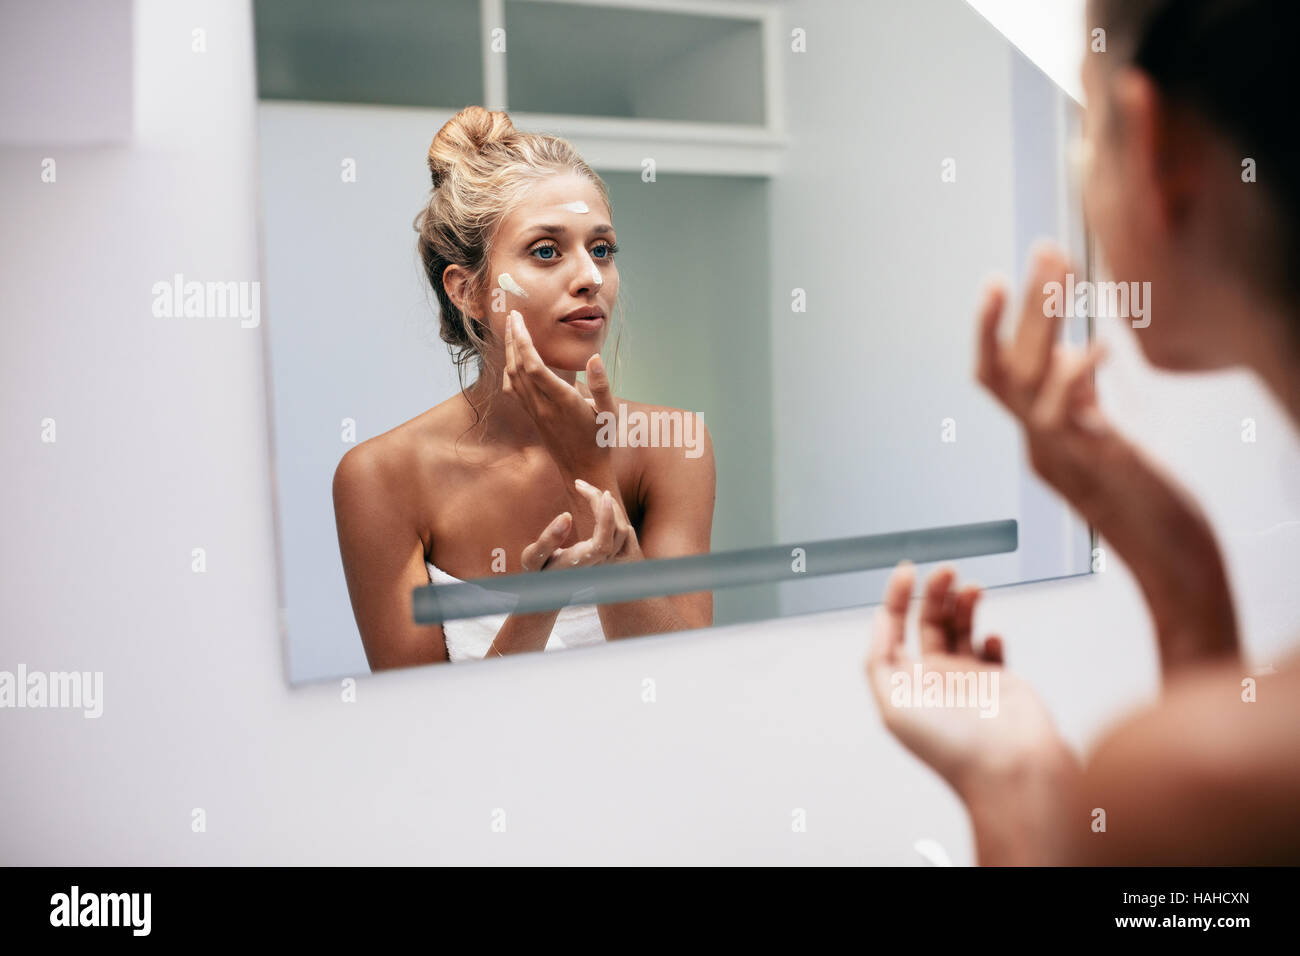 Hermosa joven aplicar crema en el baño. Mujer mirando en el espejo del baño y ponerse crema para la cara. Foto de stock